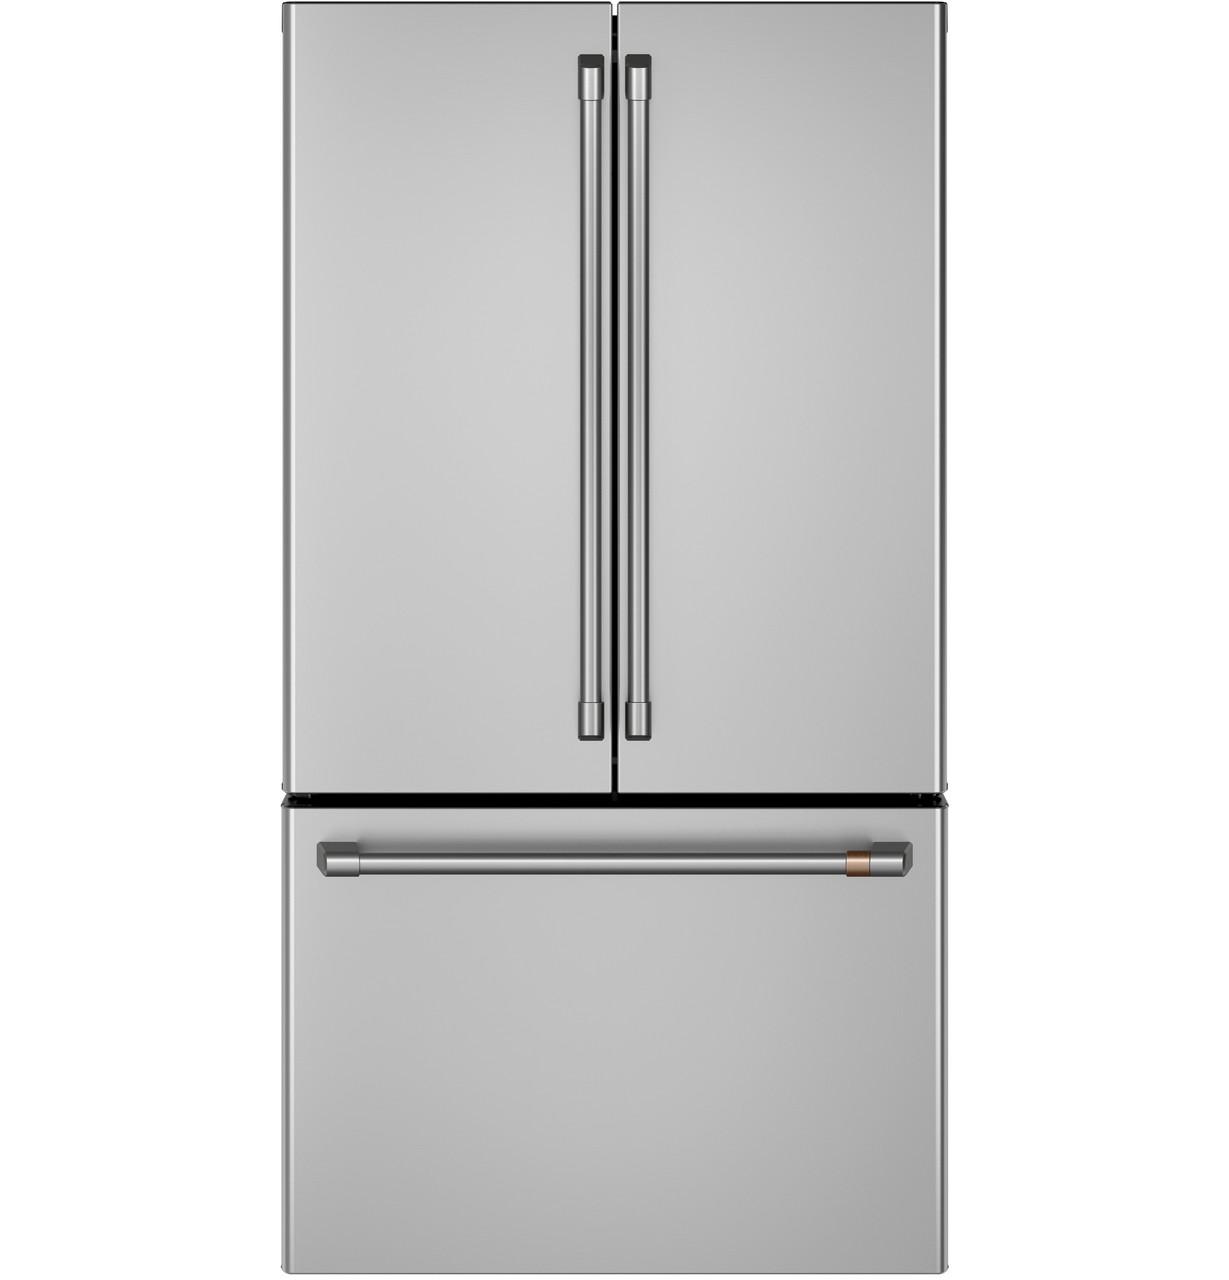 Cafe Caf(eback)™ ENERGY STAR® 23.1 Cu. Ft. Smart Counter-Depth French-Door Refrigerator